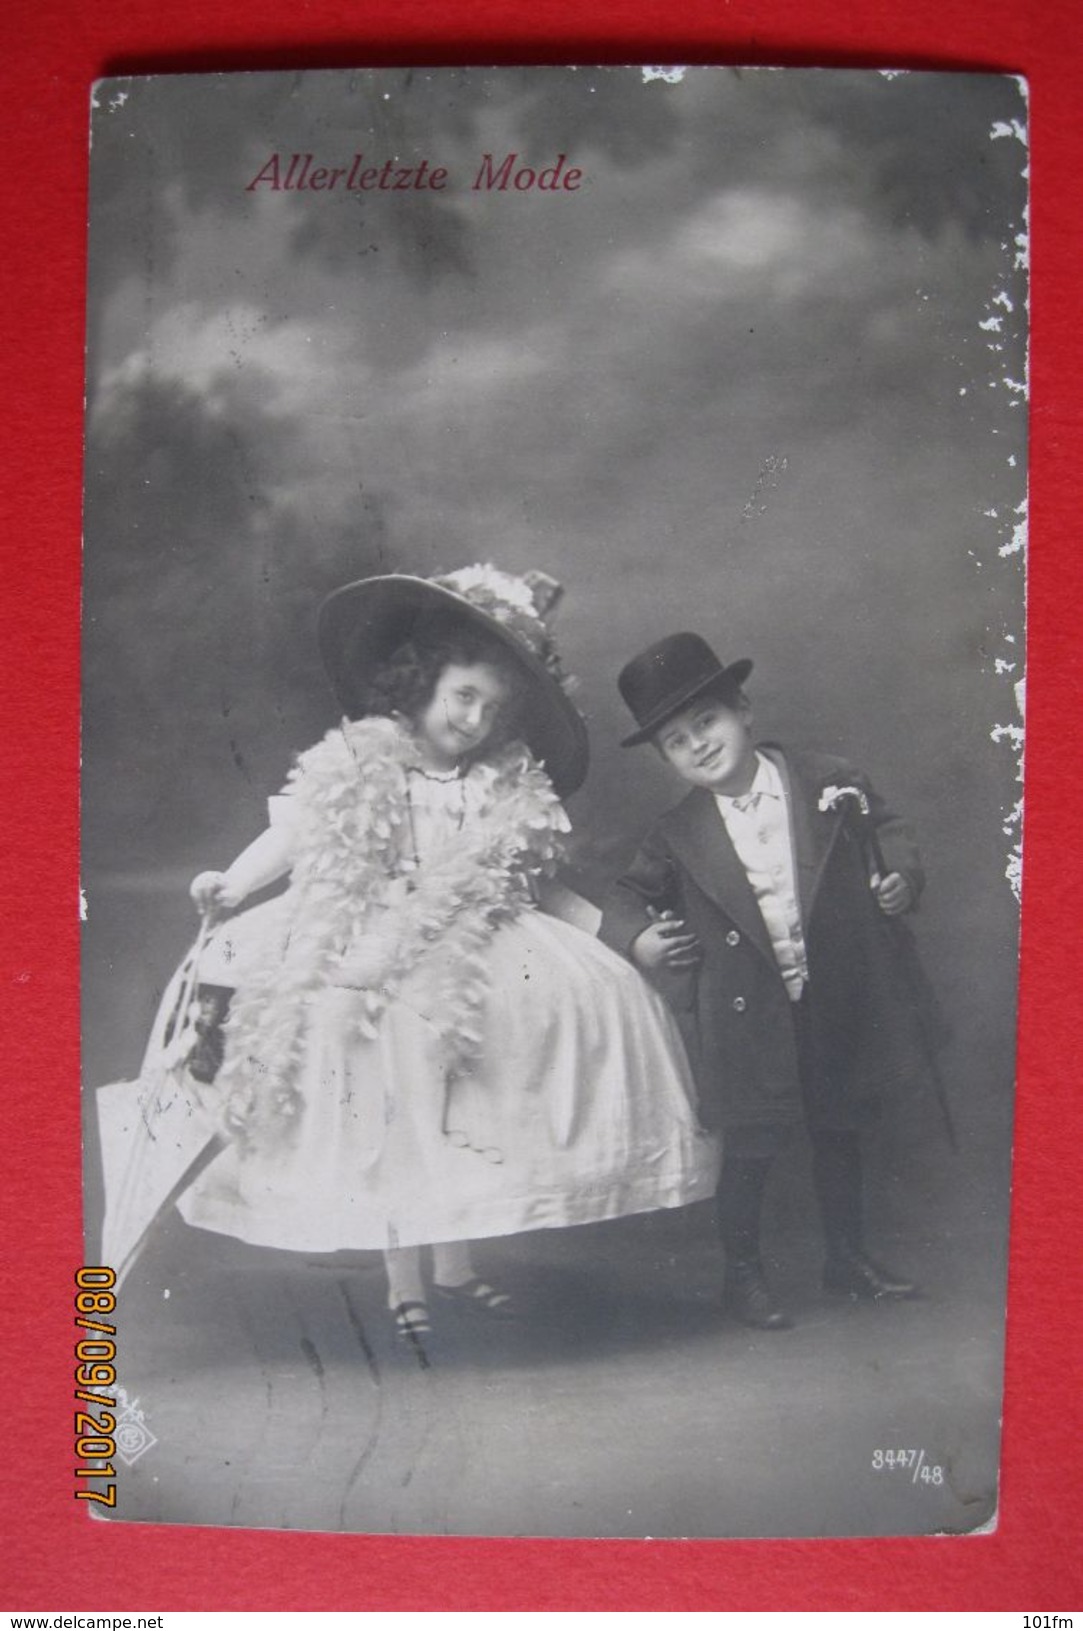 Kinder Allerletzte Mode - Kids Very Last Fashion 1912 - Photographie